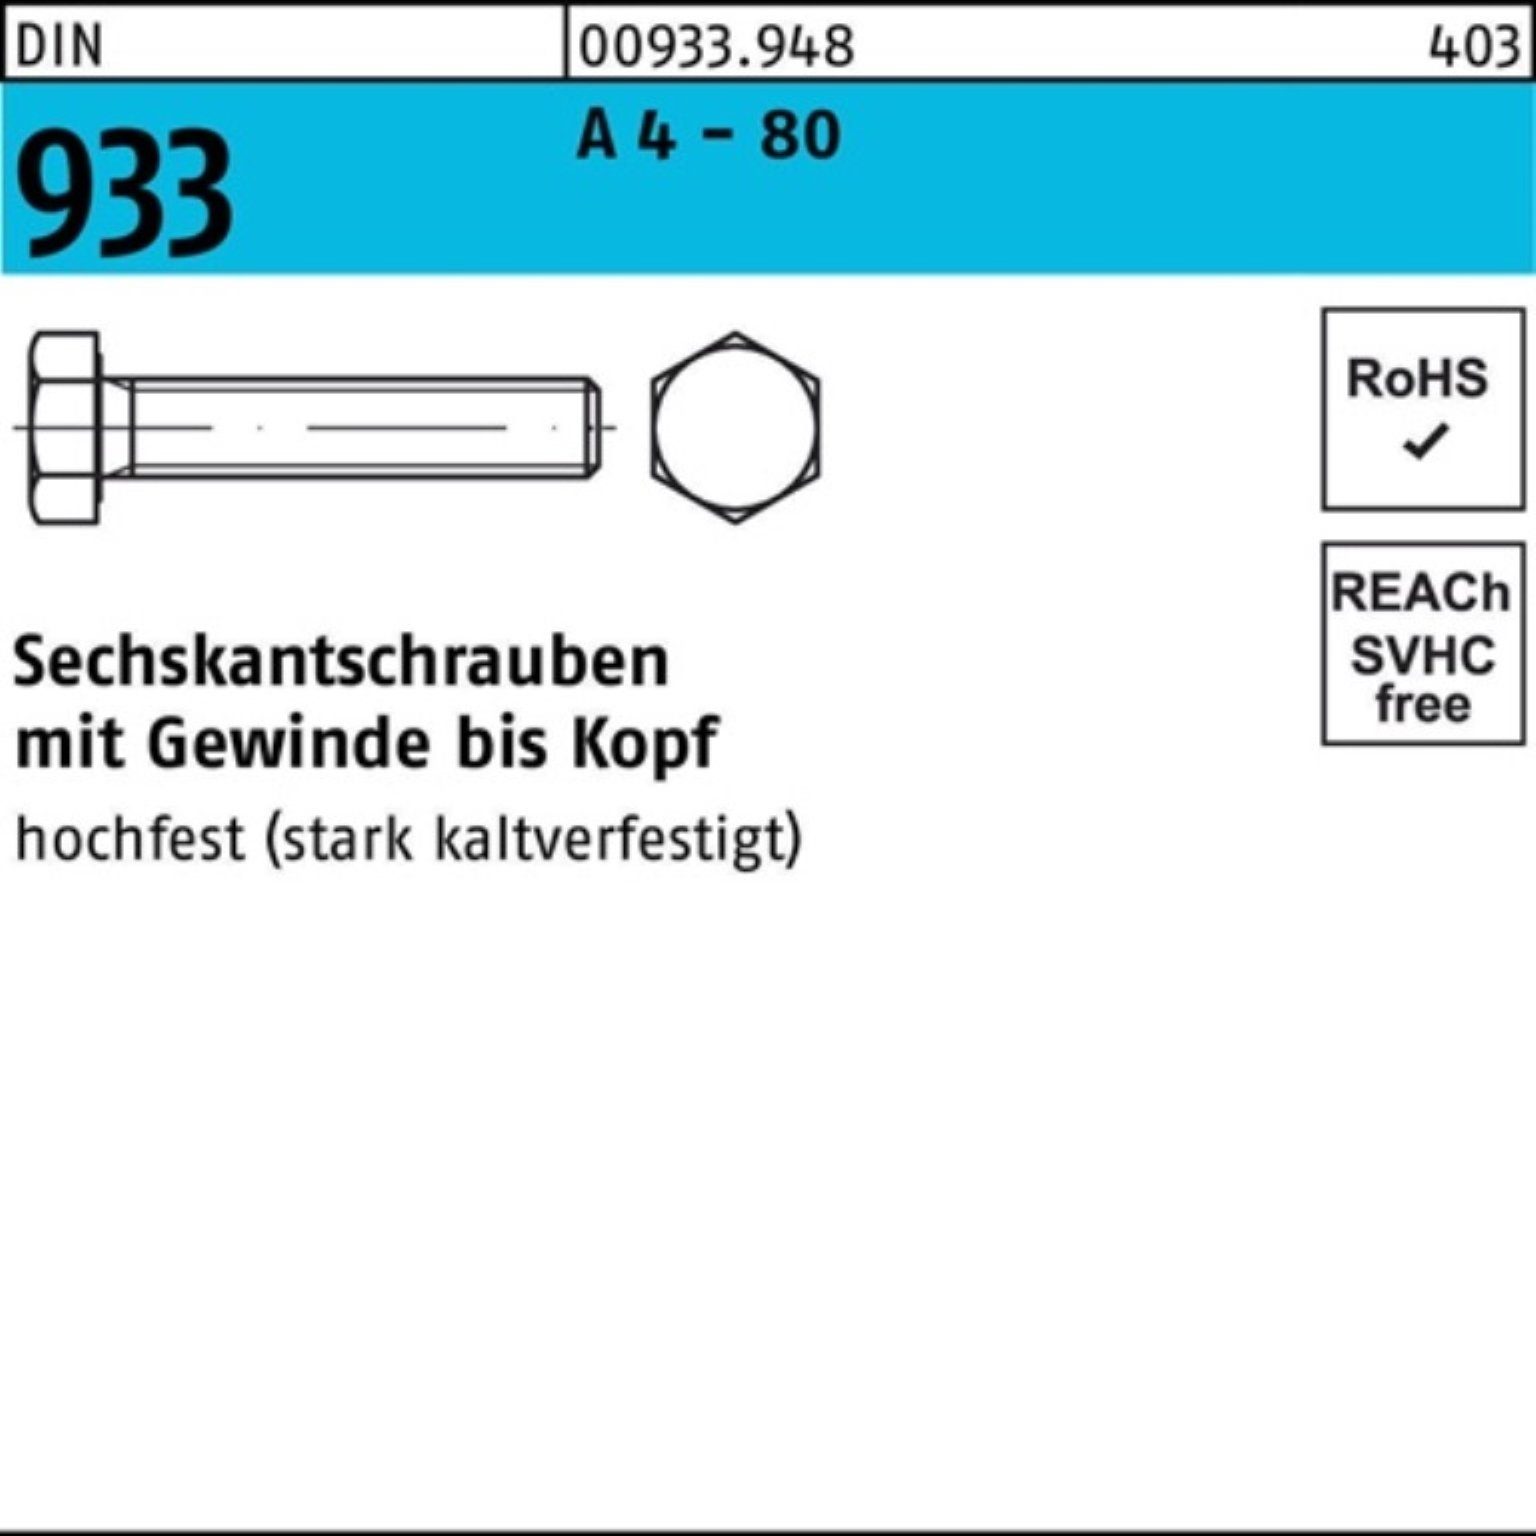 Reyher Sechskantschraube 100er Pack Sechskantschraube DIN 933 VG M8x 35 A 4 - 80 100 Stück DIN